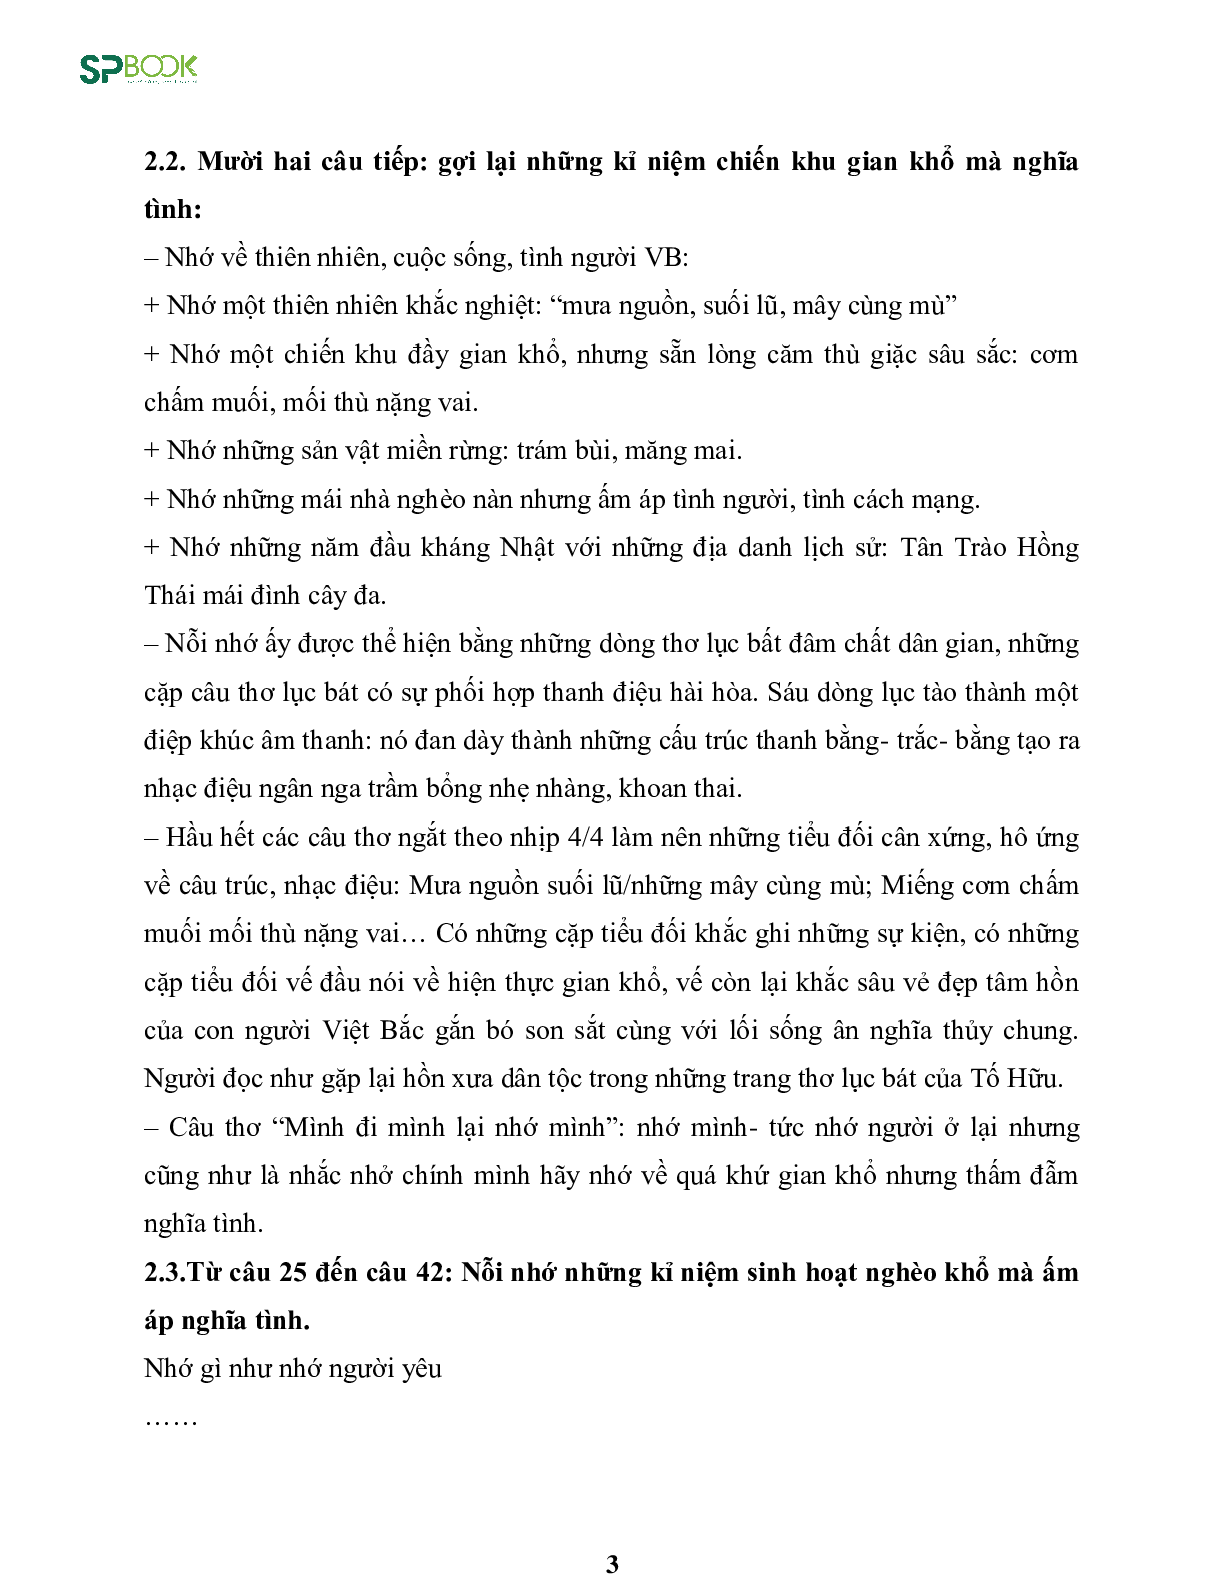 Kiến thức cơ bản và những dạng đề thi về bài Việt Bắc - Tố Hữu Văn 12 (trang 3)